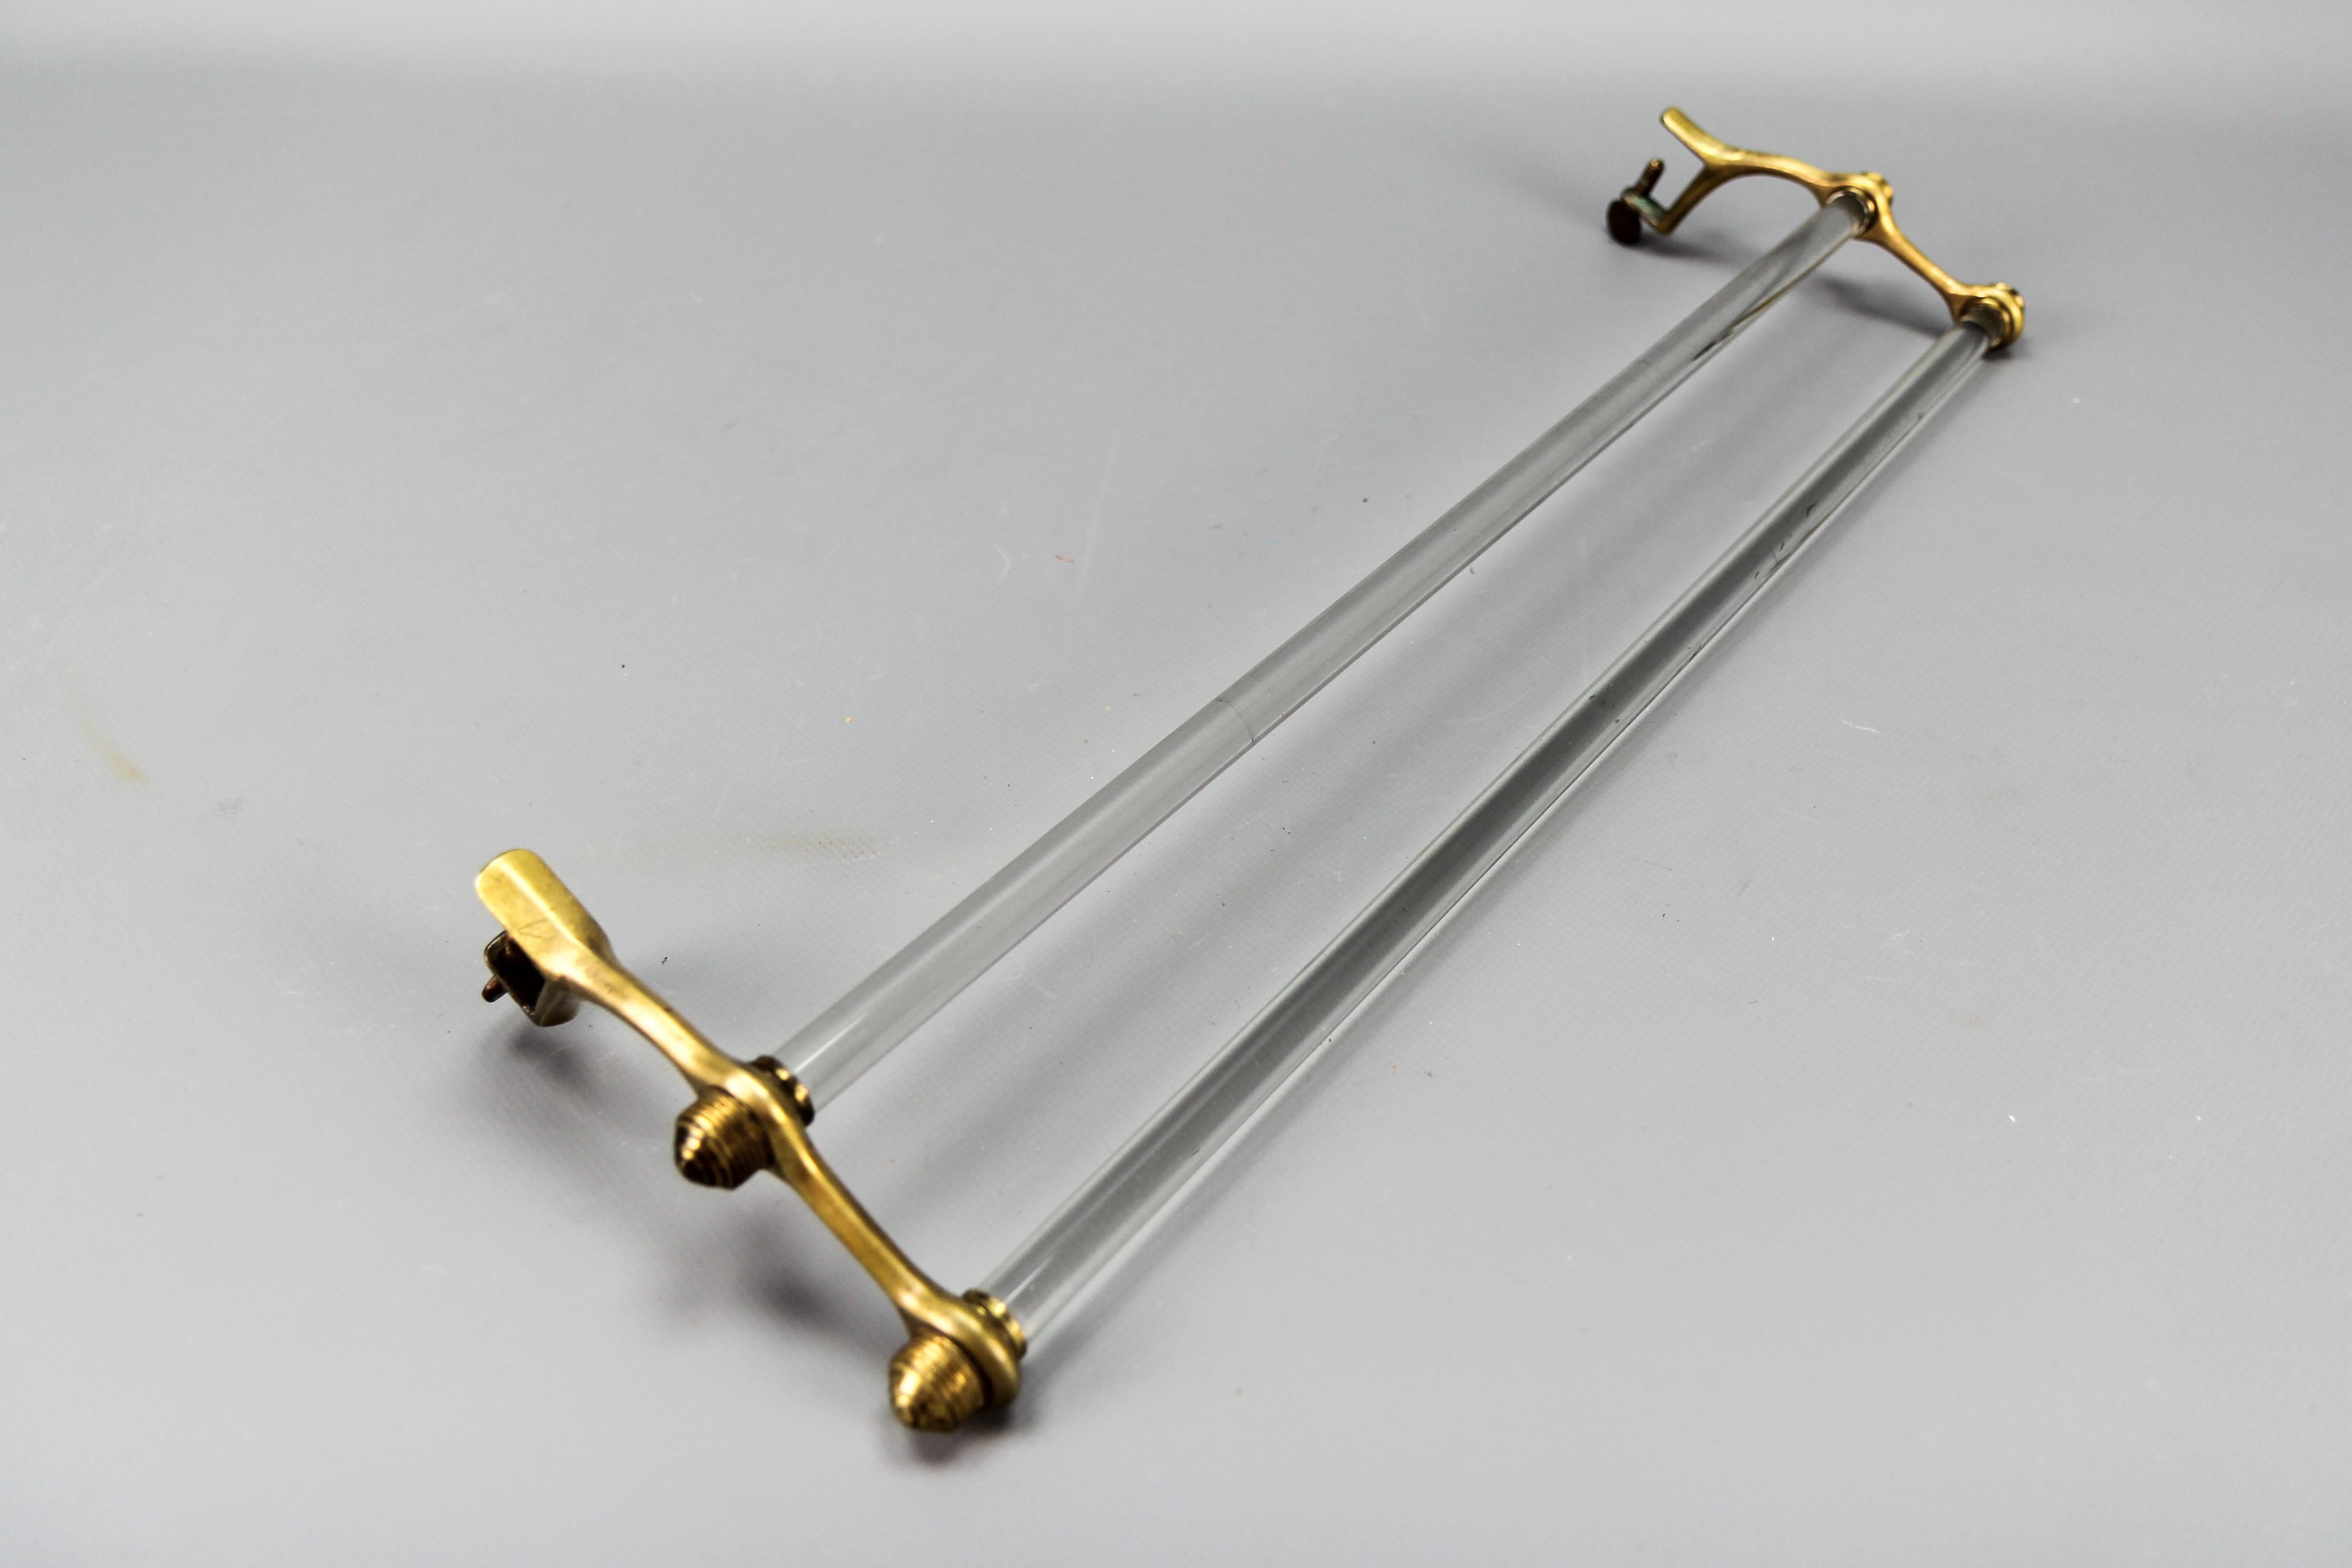 Porte-serviettes en verre double Art Déco français avec des extrémités en laiton, les années 1930.
Un élégant porte-serviettes en verre double de la période Art Déco avec des extrémités en laiton. Les griffes en forme de U à l'extrémité des pièces